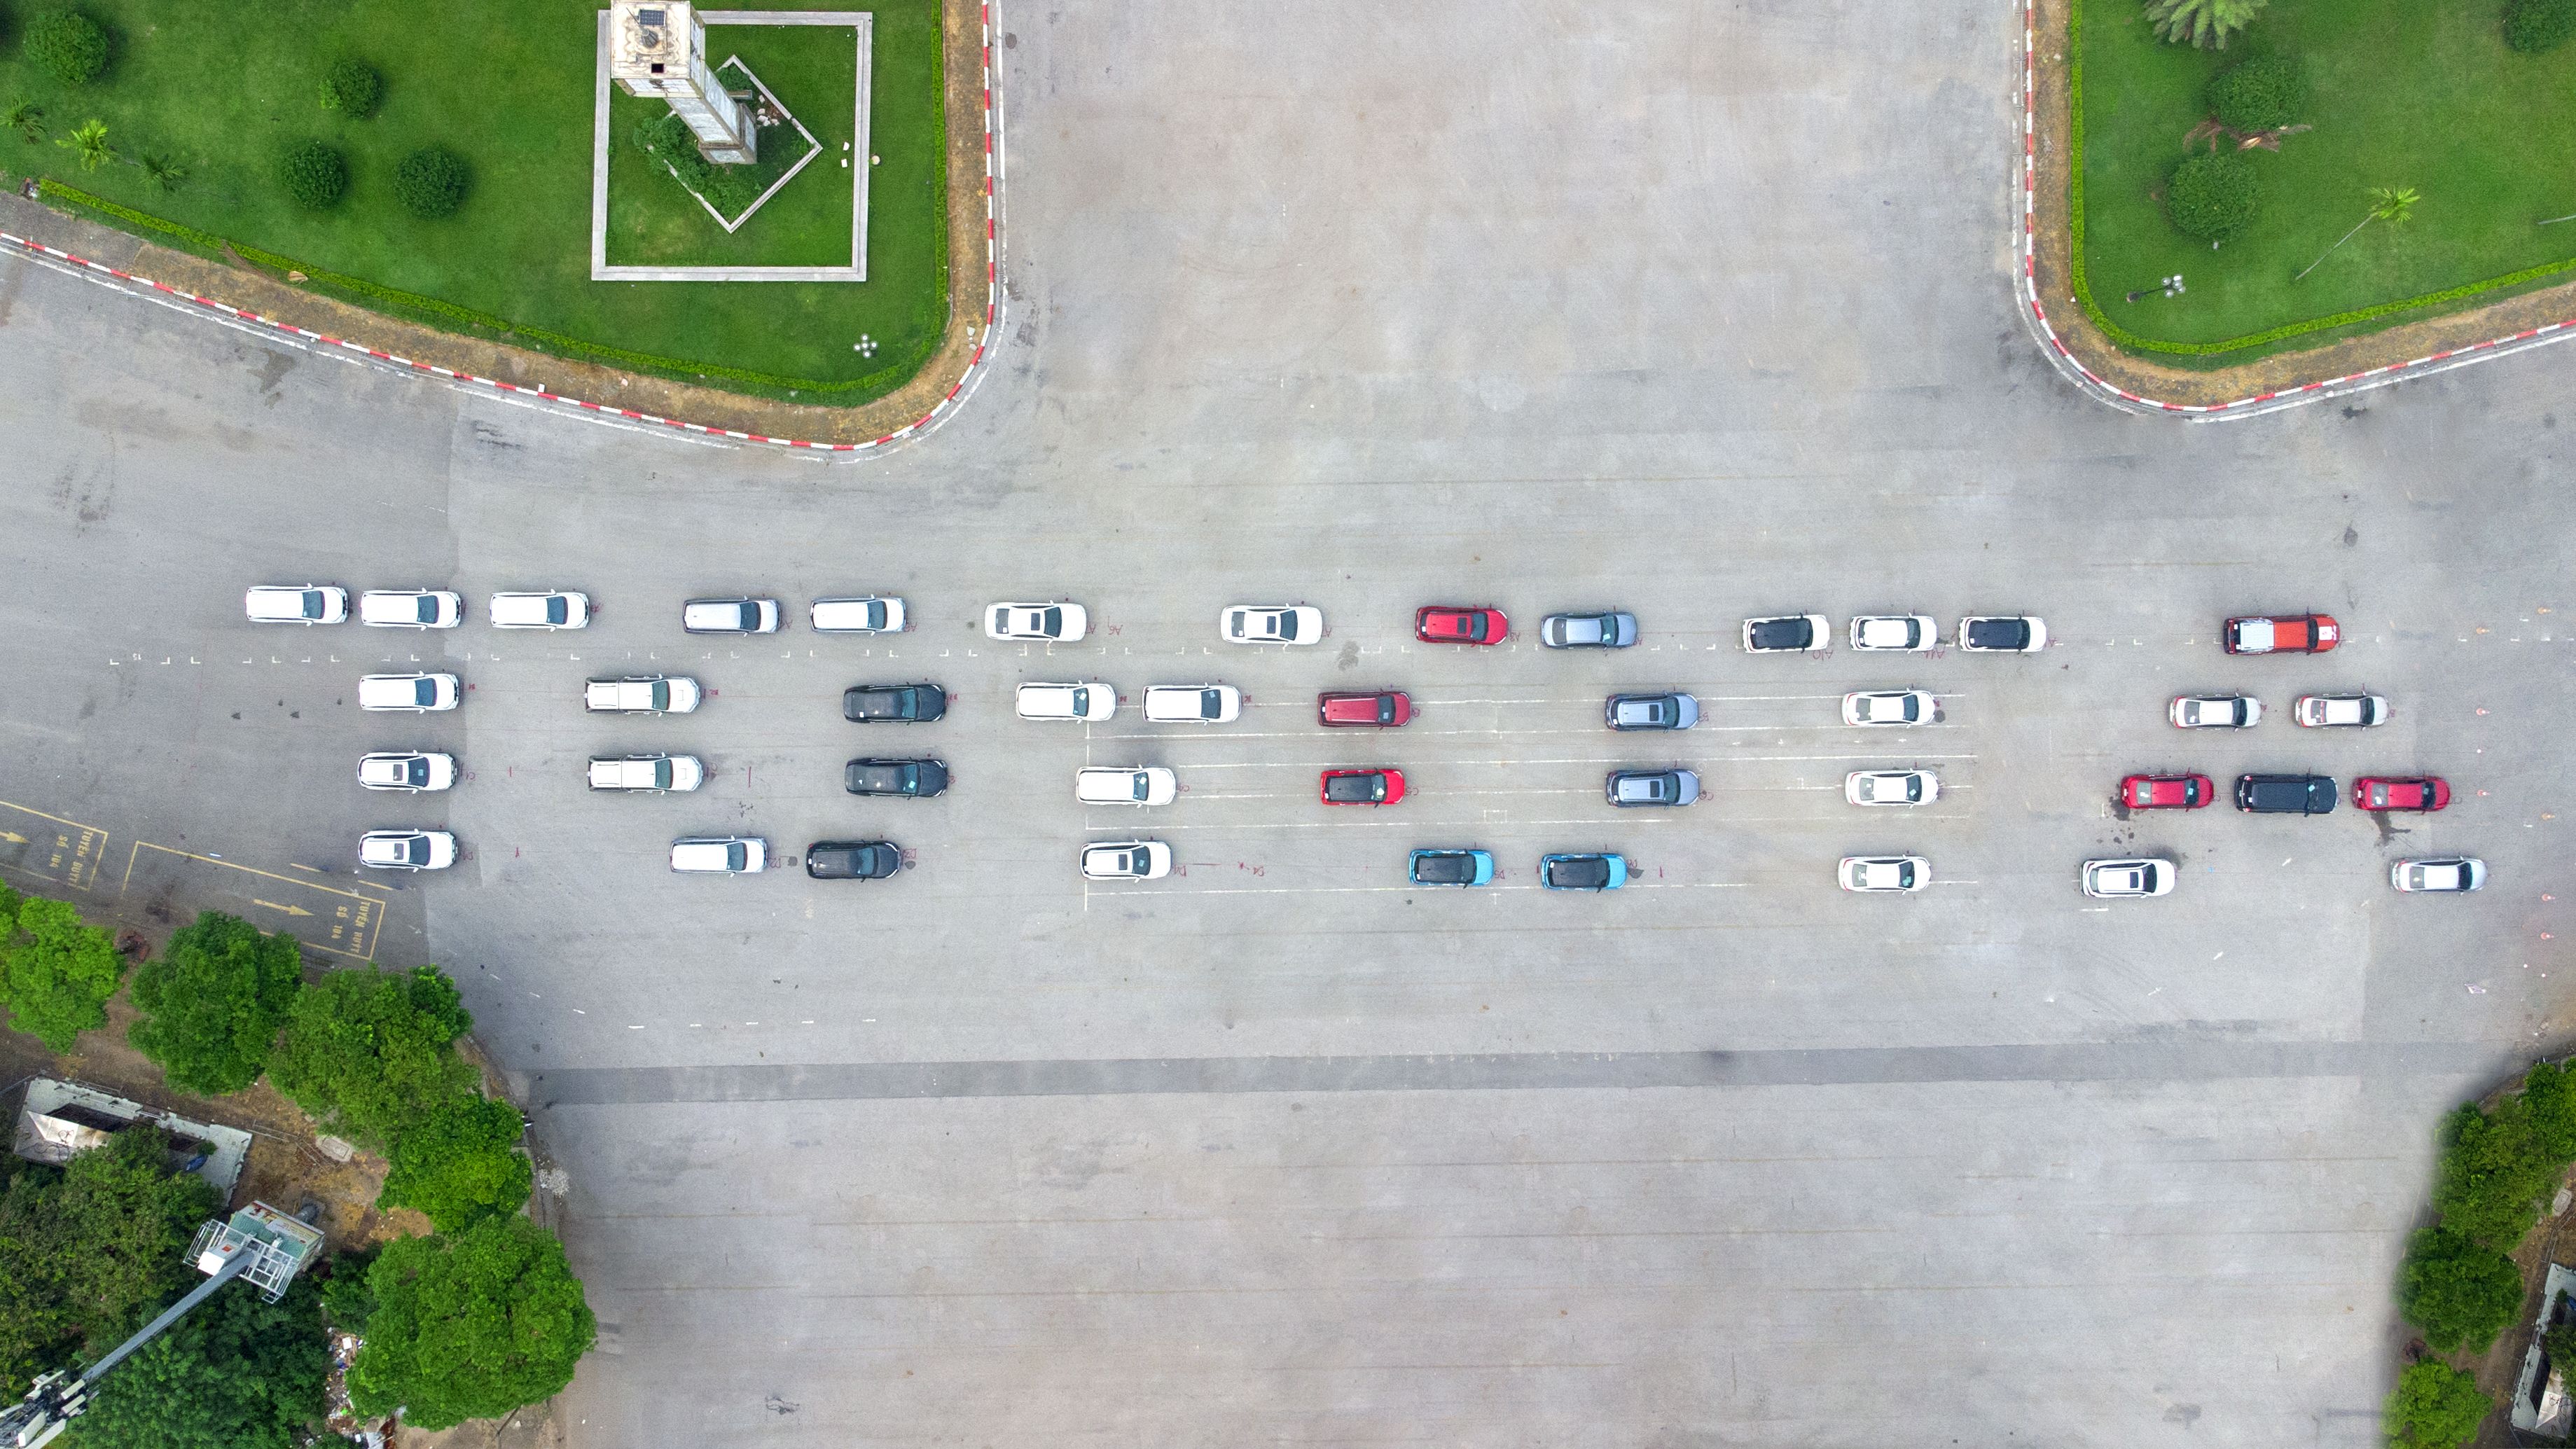 Chương trình Roadshow “Kích hoạt hành trình mới” cùng sự kiện lái thử hấp dẫn từ Toyota Long Biên